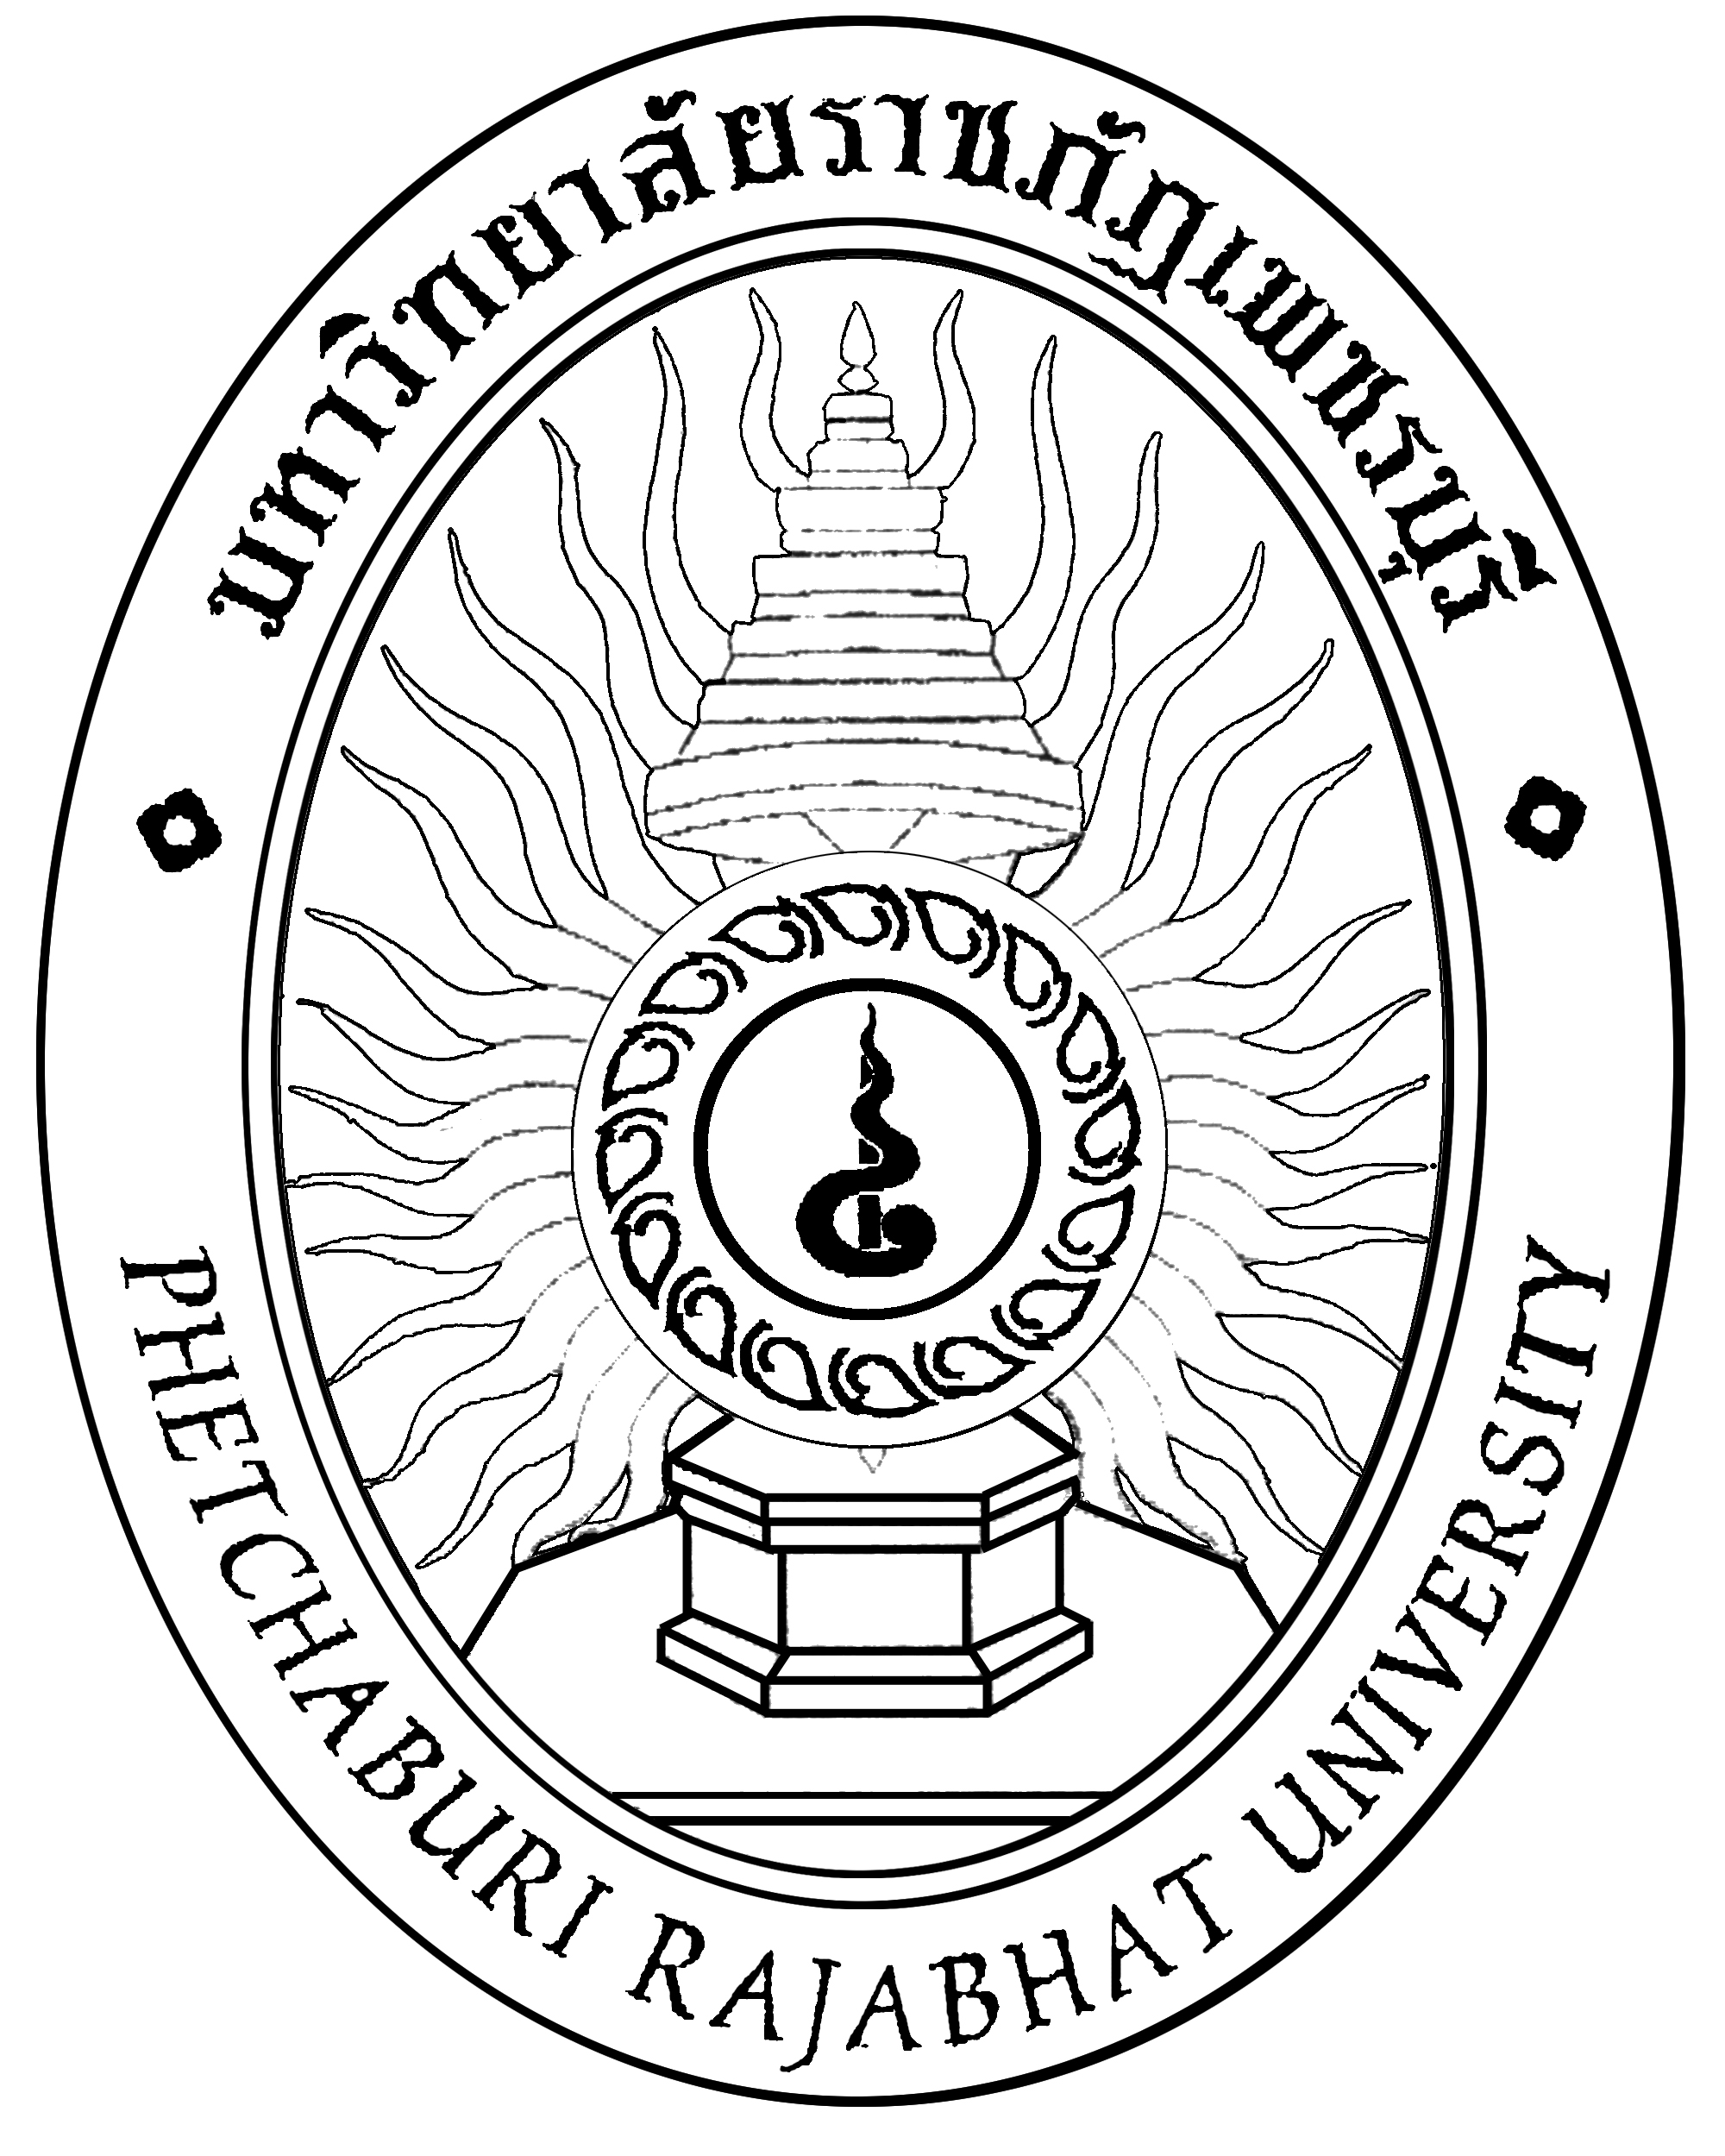 logo pbru06 นิทรรศการออนไลน์ 14 กุมภาพันธ์ วันสถาปนาราชภัฏ